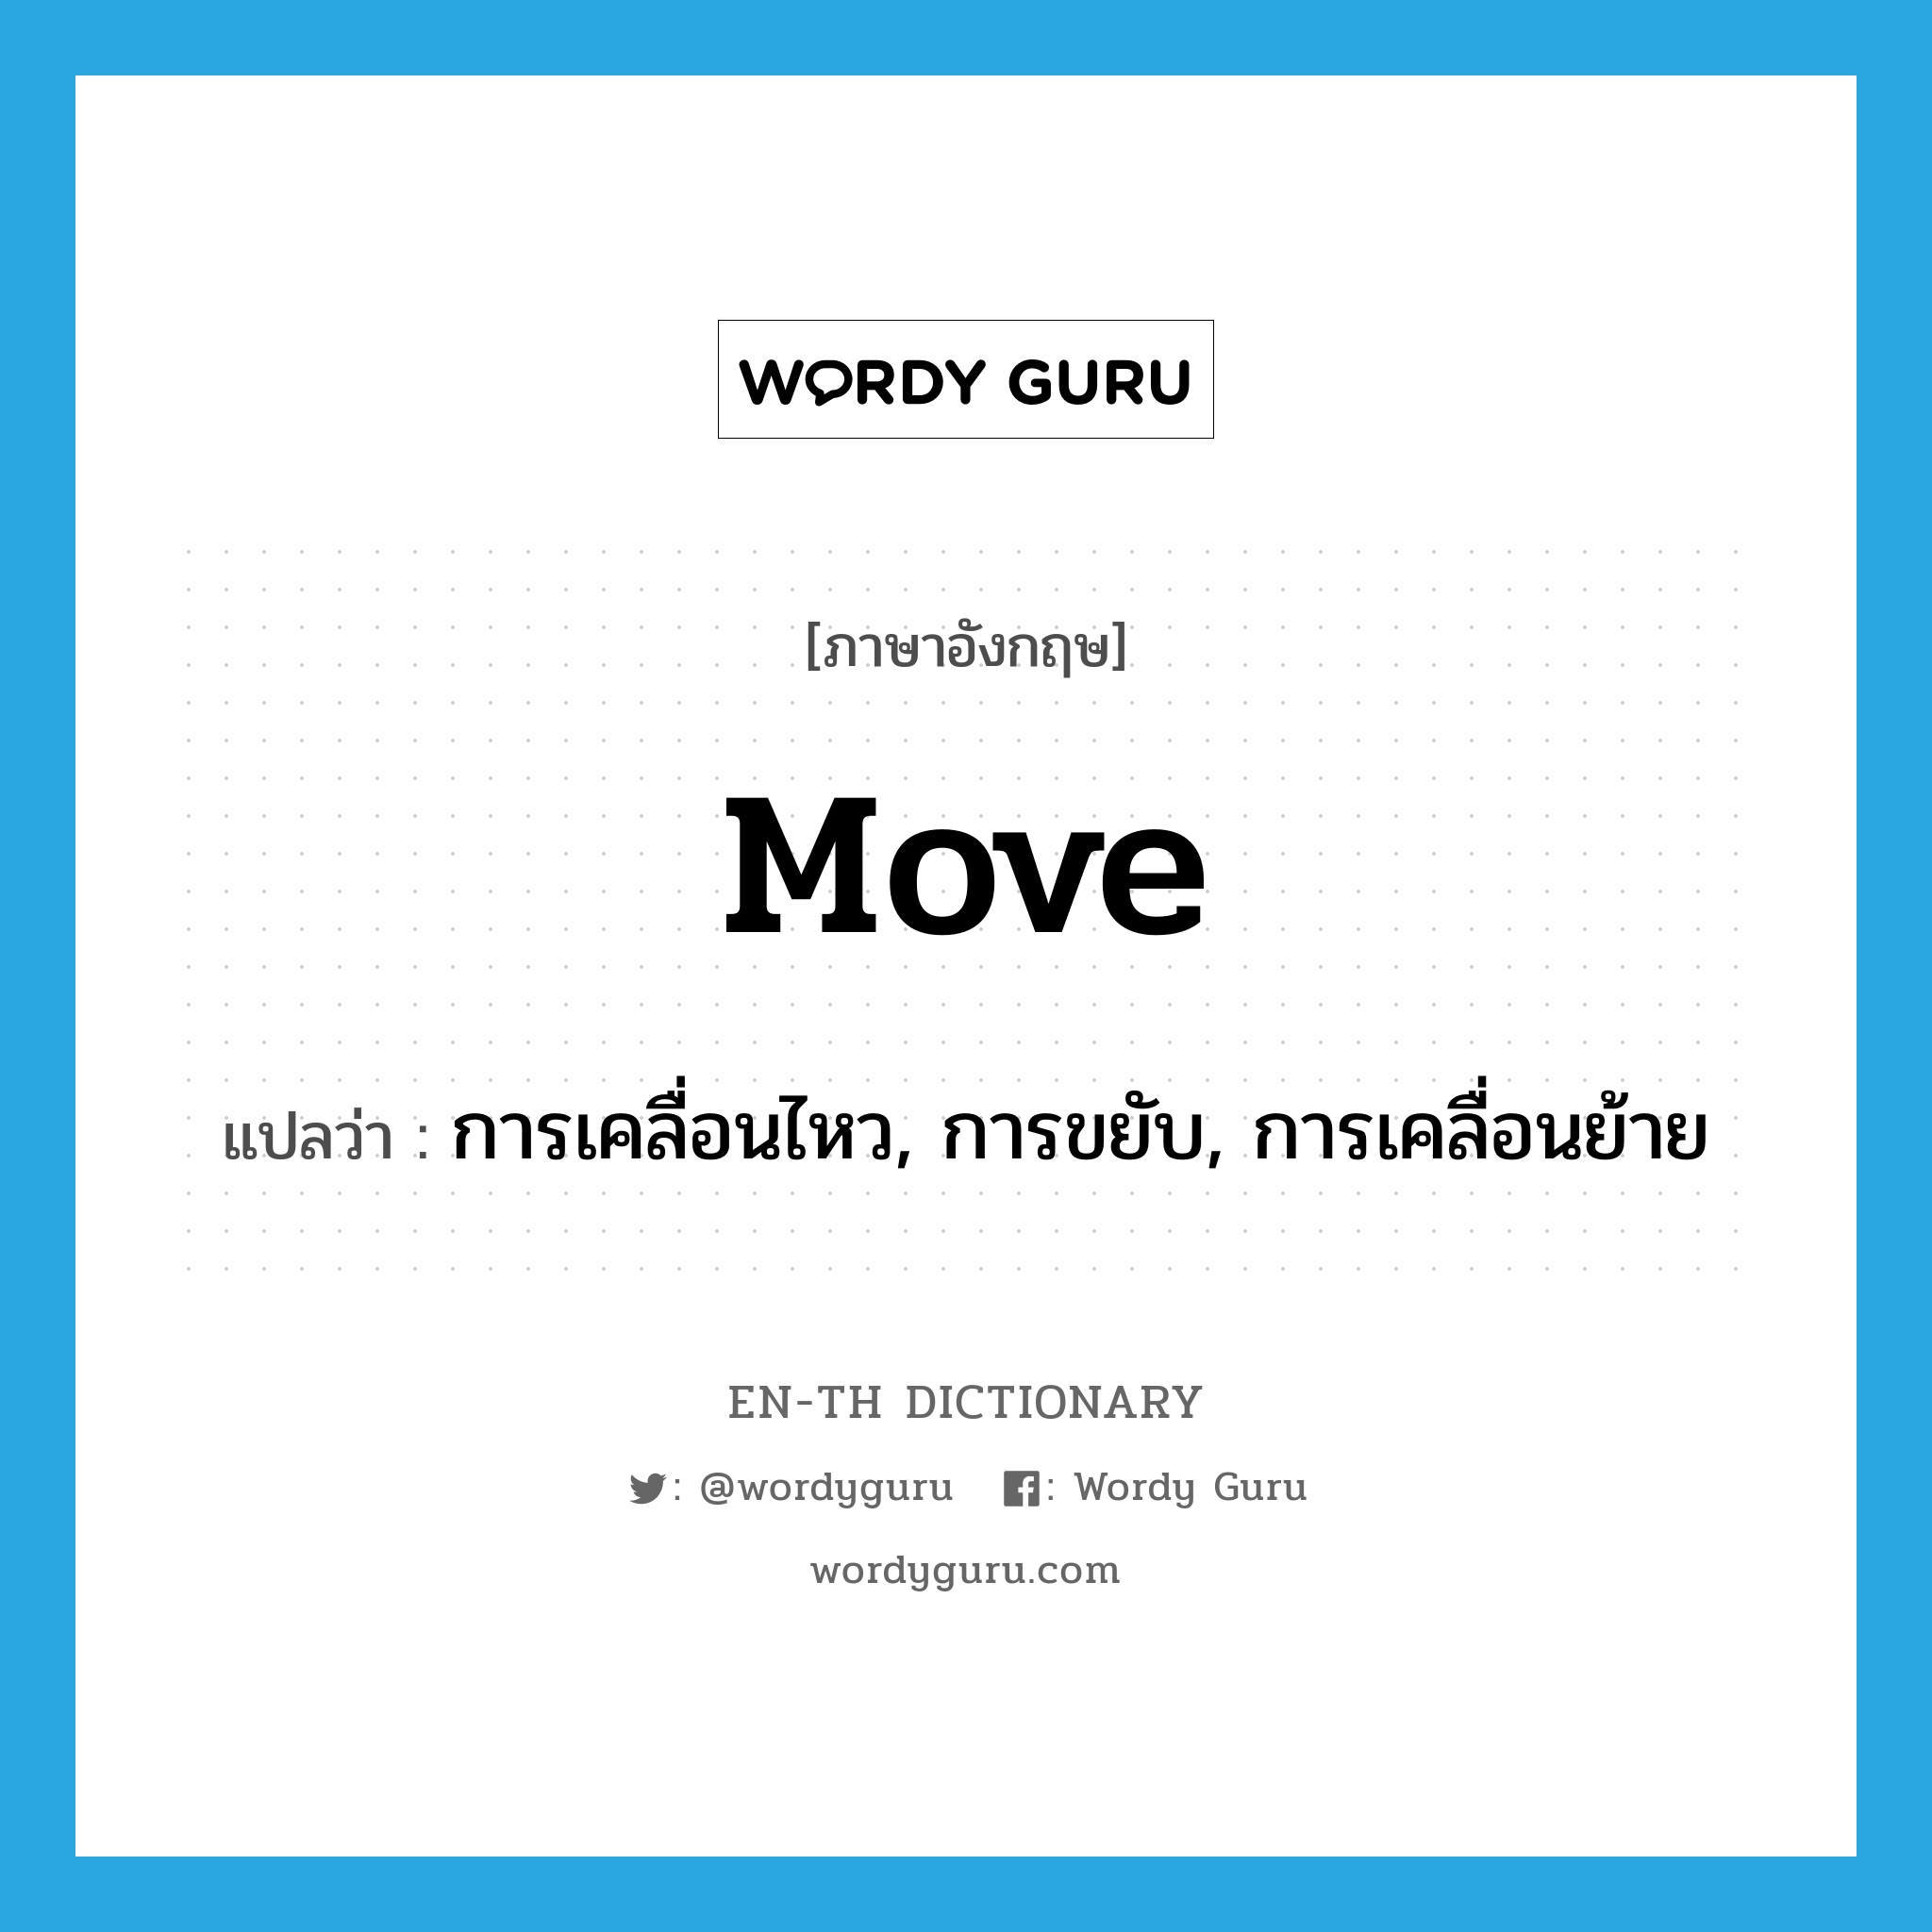 การเคลื่อนไหว, การขยับ, การเคลื่อนย้าย ภาษาอังกฤษ?, คำศัพท์ภาษาอังกฤษ การเคลื่อนไหว, การขยับ, การเคลื่อนย้าย แปลว่า move ประเภท N หมวด N